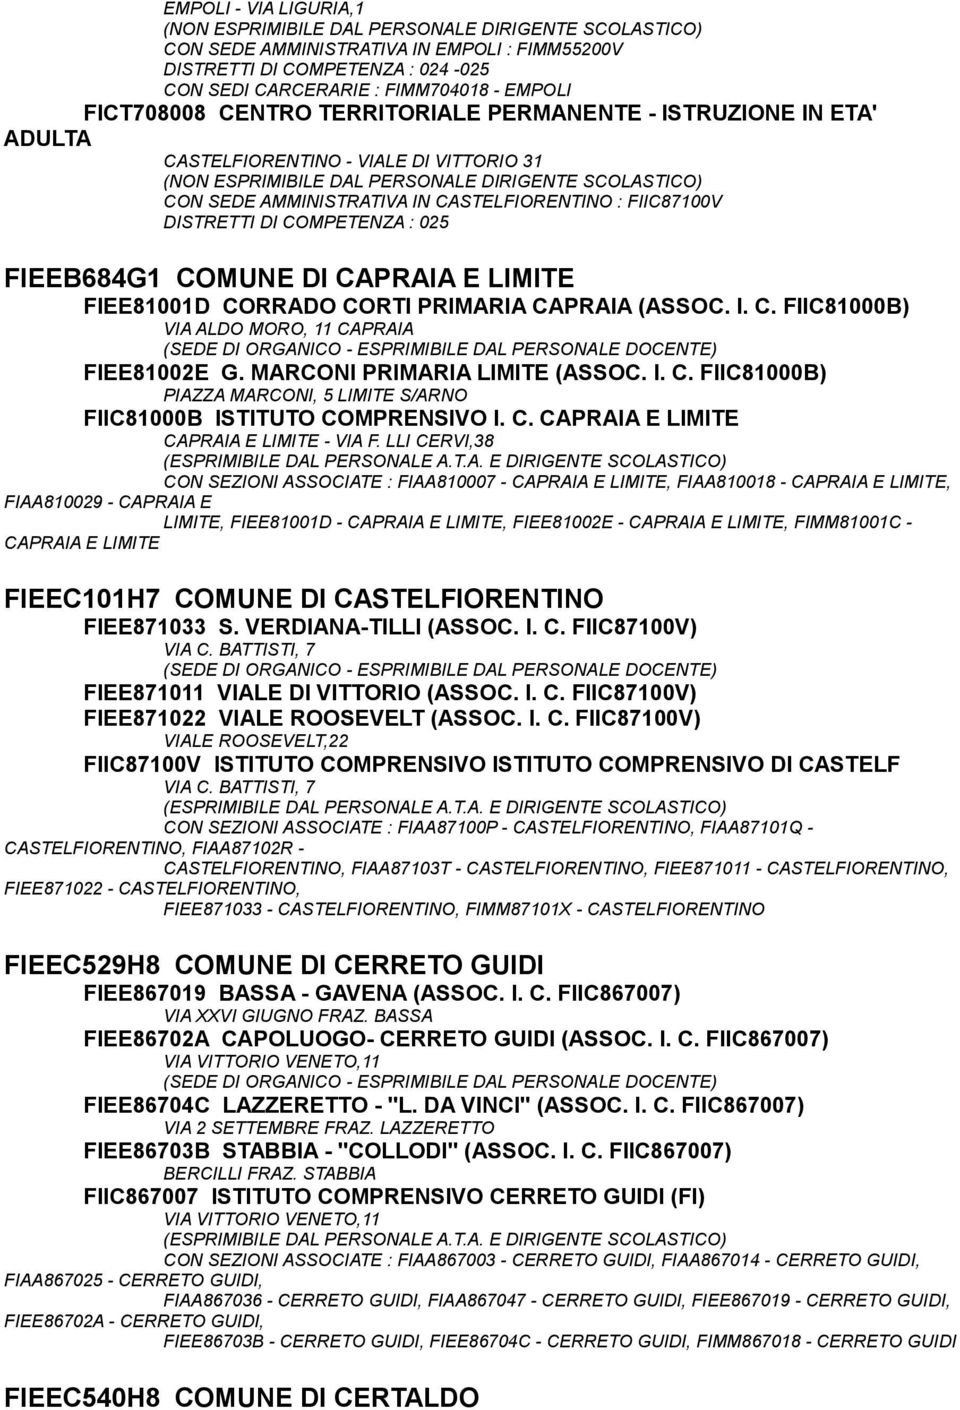 CORRADO CORTI PRIMARIA CAPRAIA (ASSOC. I. C. FIIC81000B) VIA ALDO MORO, 11 CAPRAIA FIEE81002E G. MARCONI PRIMARIA LIMITE (ASSOC. I. C. FIIC81000B) PIAZZA MARCONI, 5 LIMITE S/ARNO FIIC81000B ISTITUTO COMPRENSIVO I.